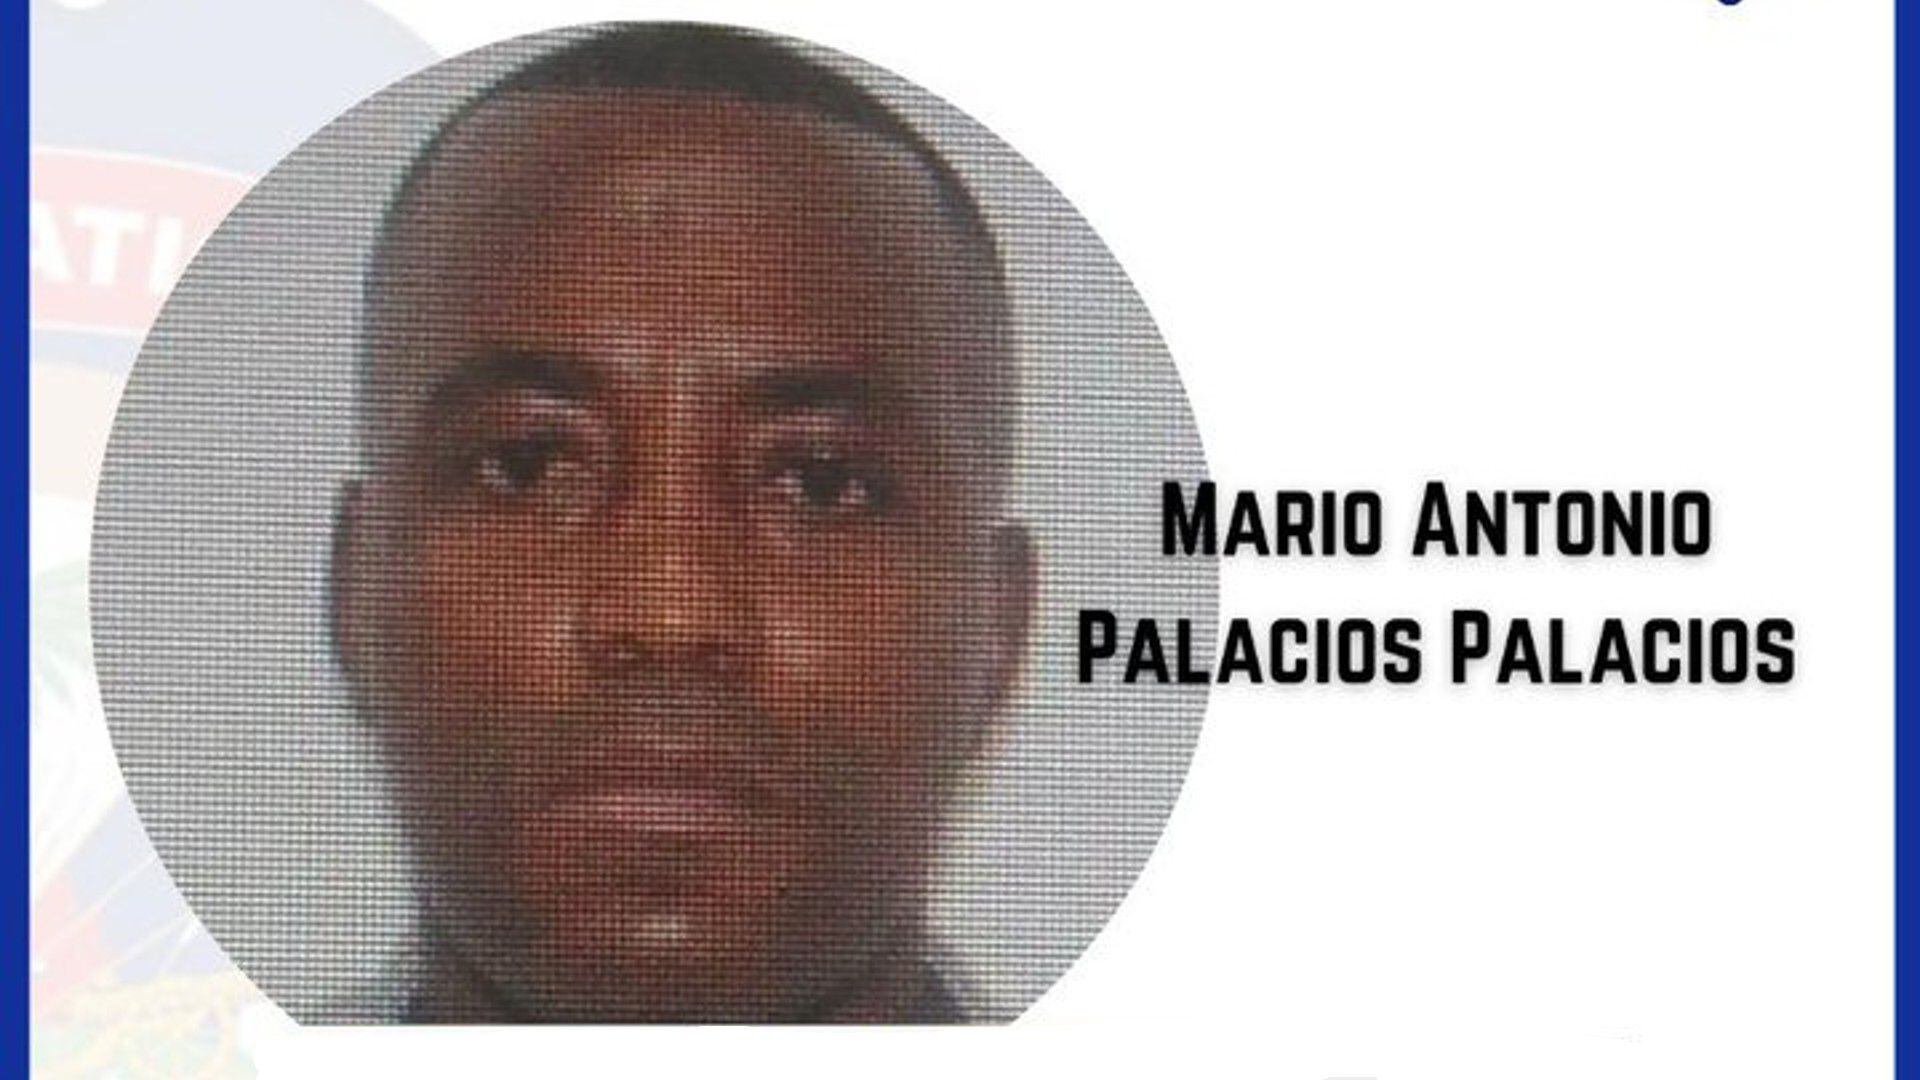 Mario Antonio Palacios Palacios